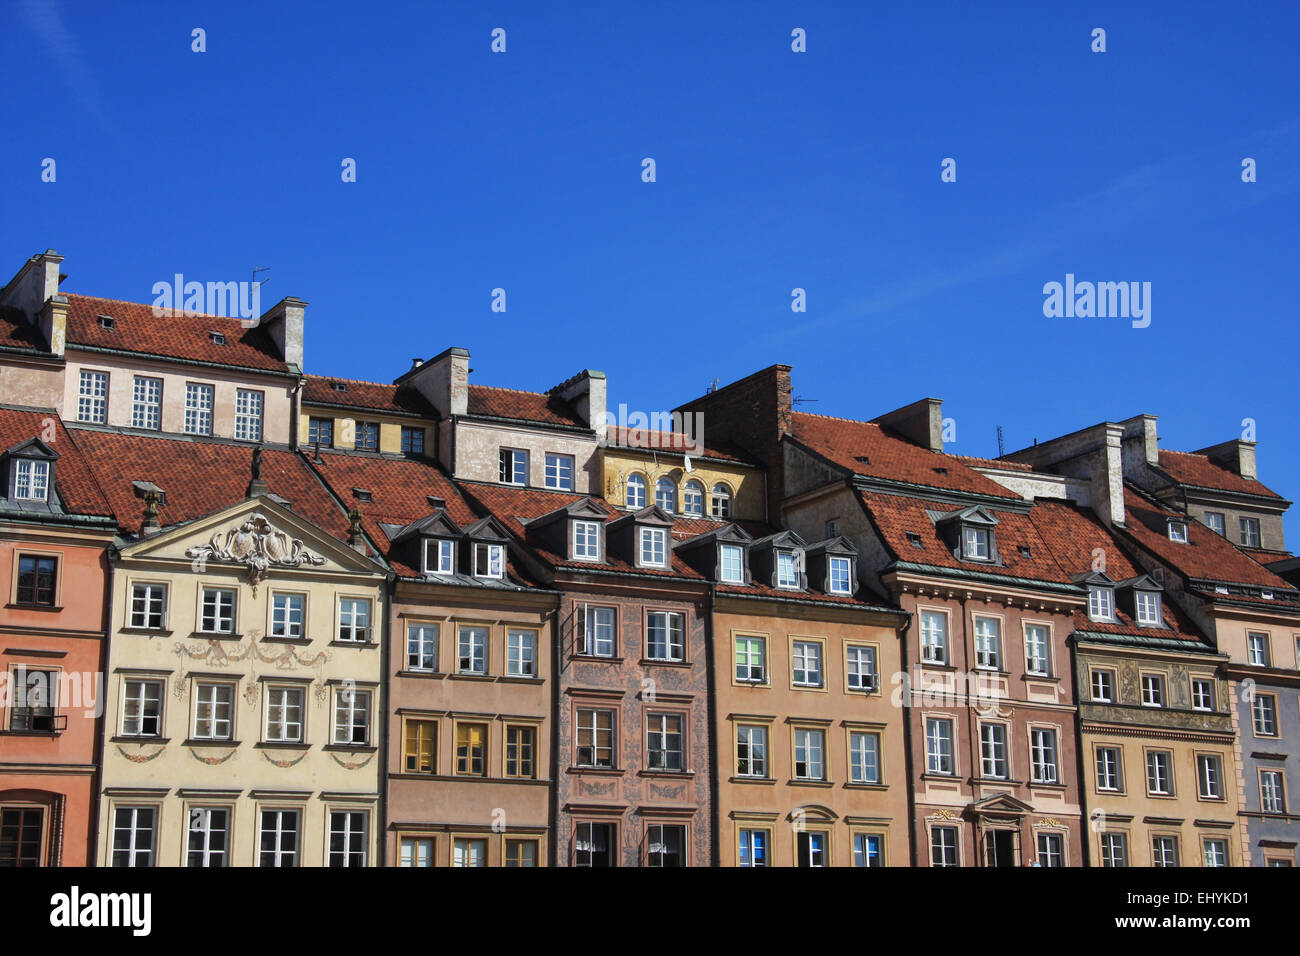 Polen, Warschau, Europa, Altstadt, Unesco, Weltkulturerbe, Marktplatz Rynek Ehren Miasta, Häuser, Wohnungen, Fassaden, Stockfoto